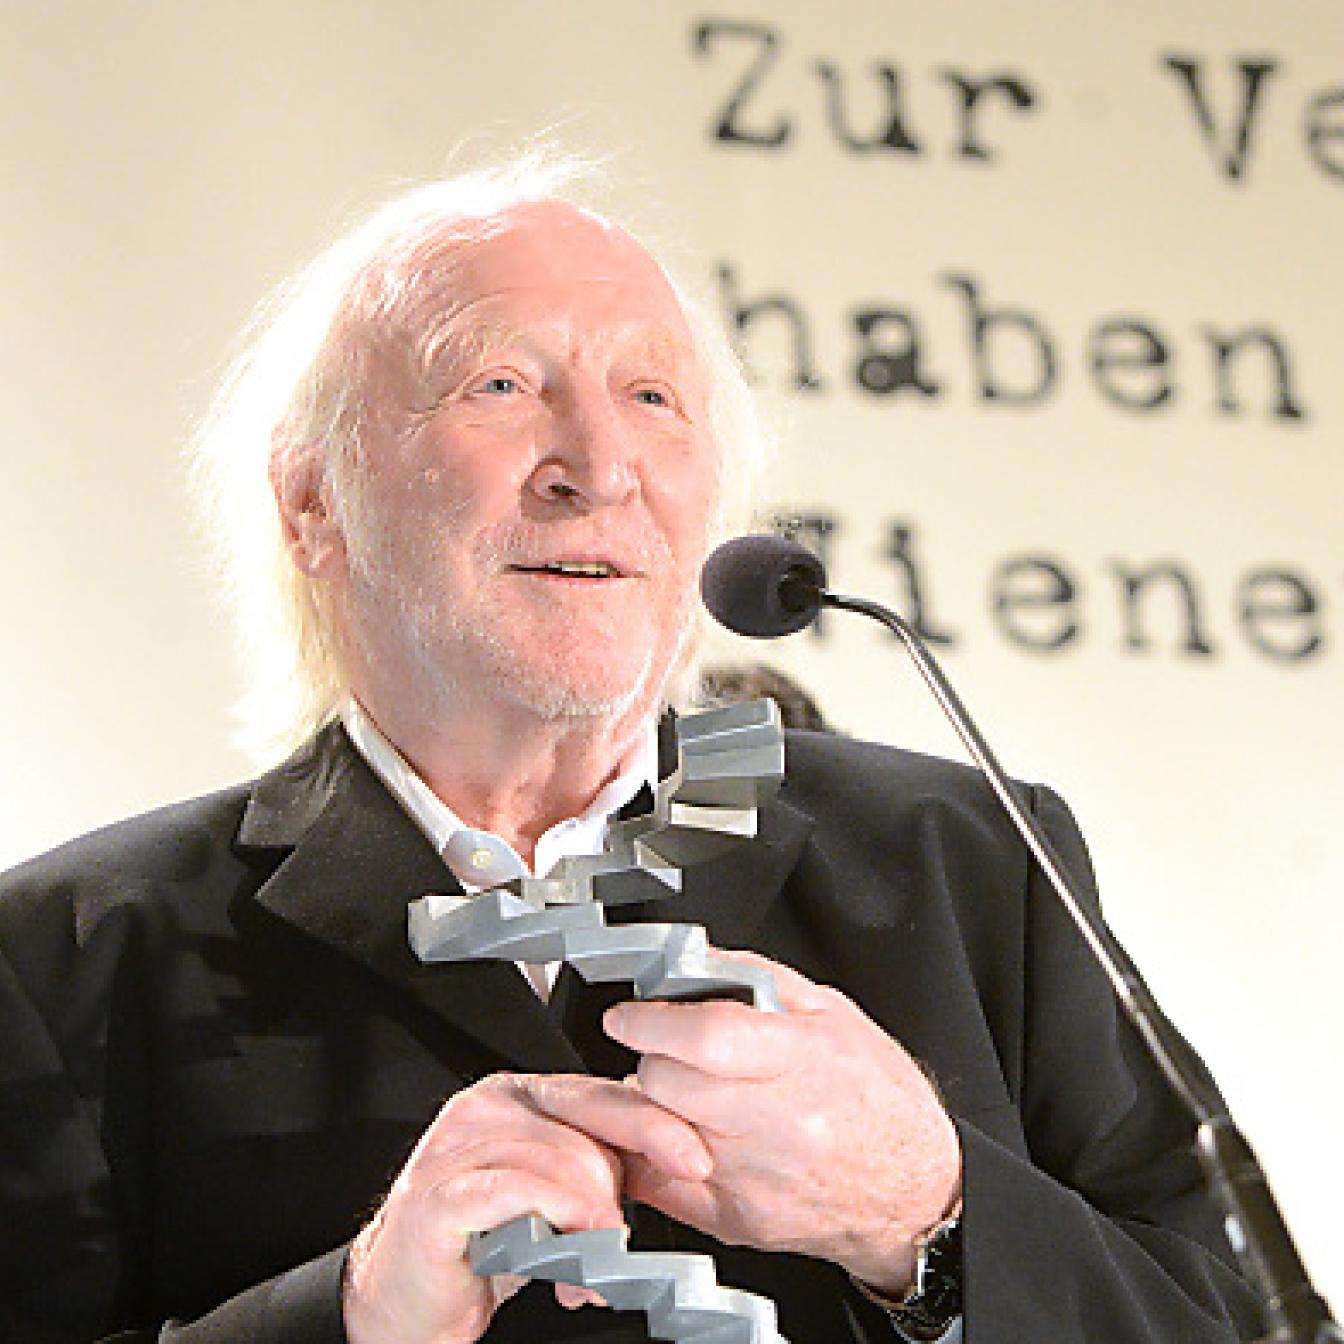 Verleihung "Österreichischer Filmpreis 2013" am Mittwoch, 23. Jänner 2013, im Wiener Rathaus. Im Bild: Schauspieler Karl Merkatz ("Bester männlicher Darsteller") während der Preisverleihung.